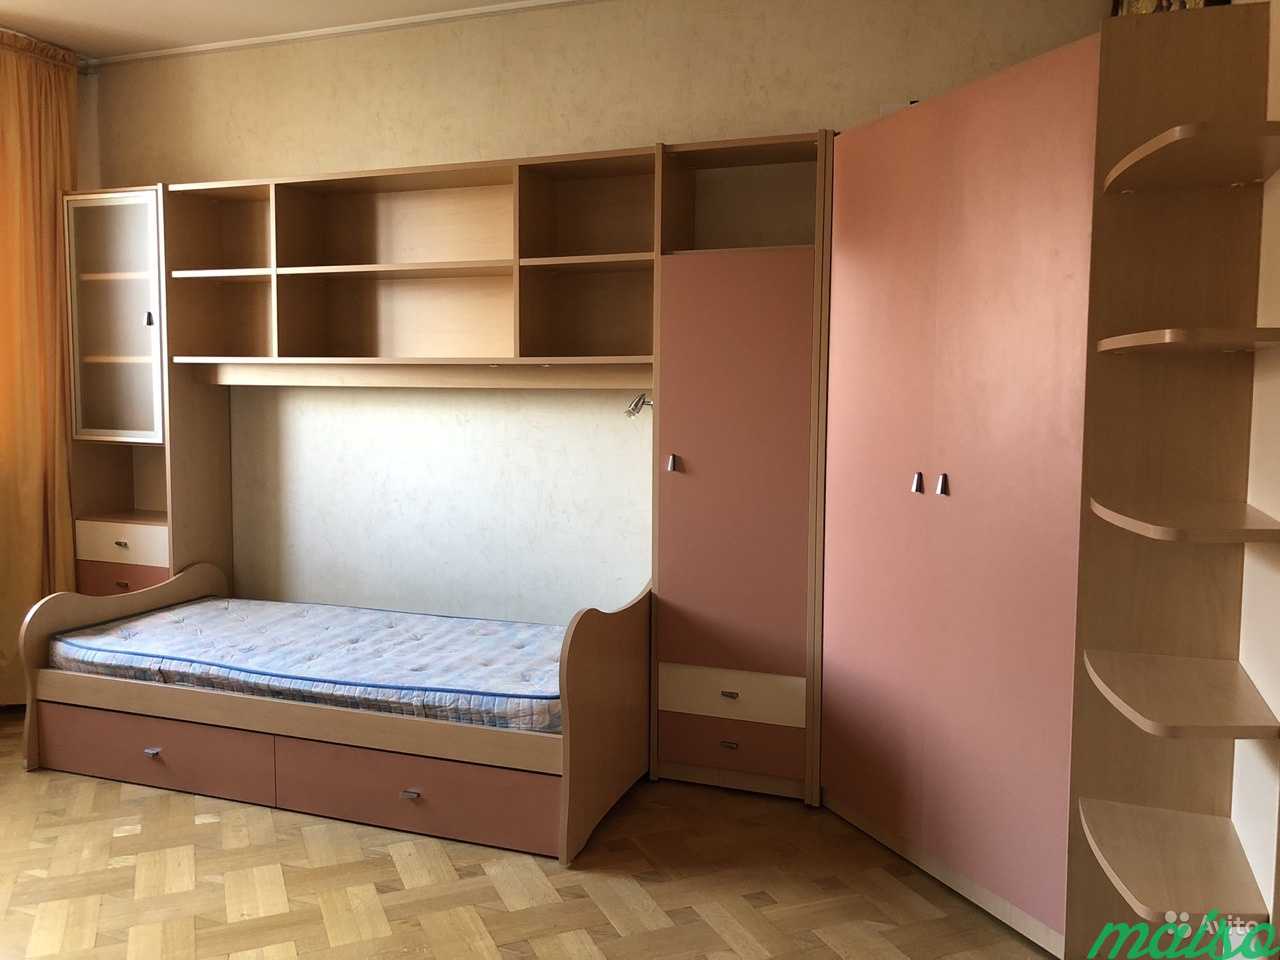 Набор мебели, уголок школьника в Москве. Фото 1